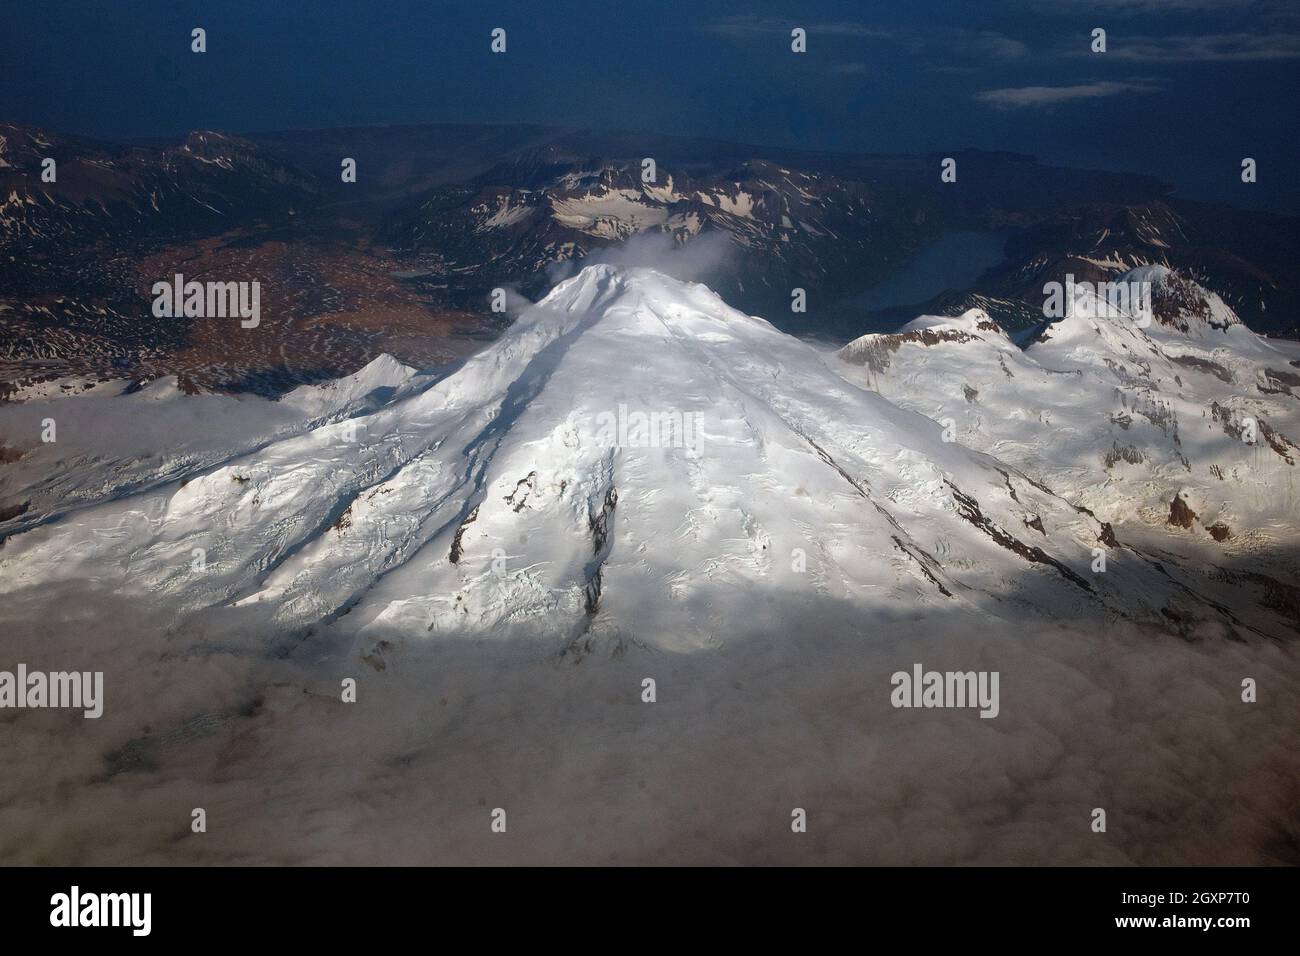 Vista aérea del volcán nevado Mount Iliamna, Alaska, Estados Unidos Foto de stock